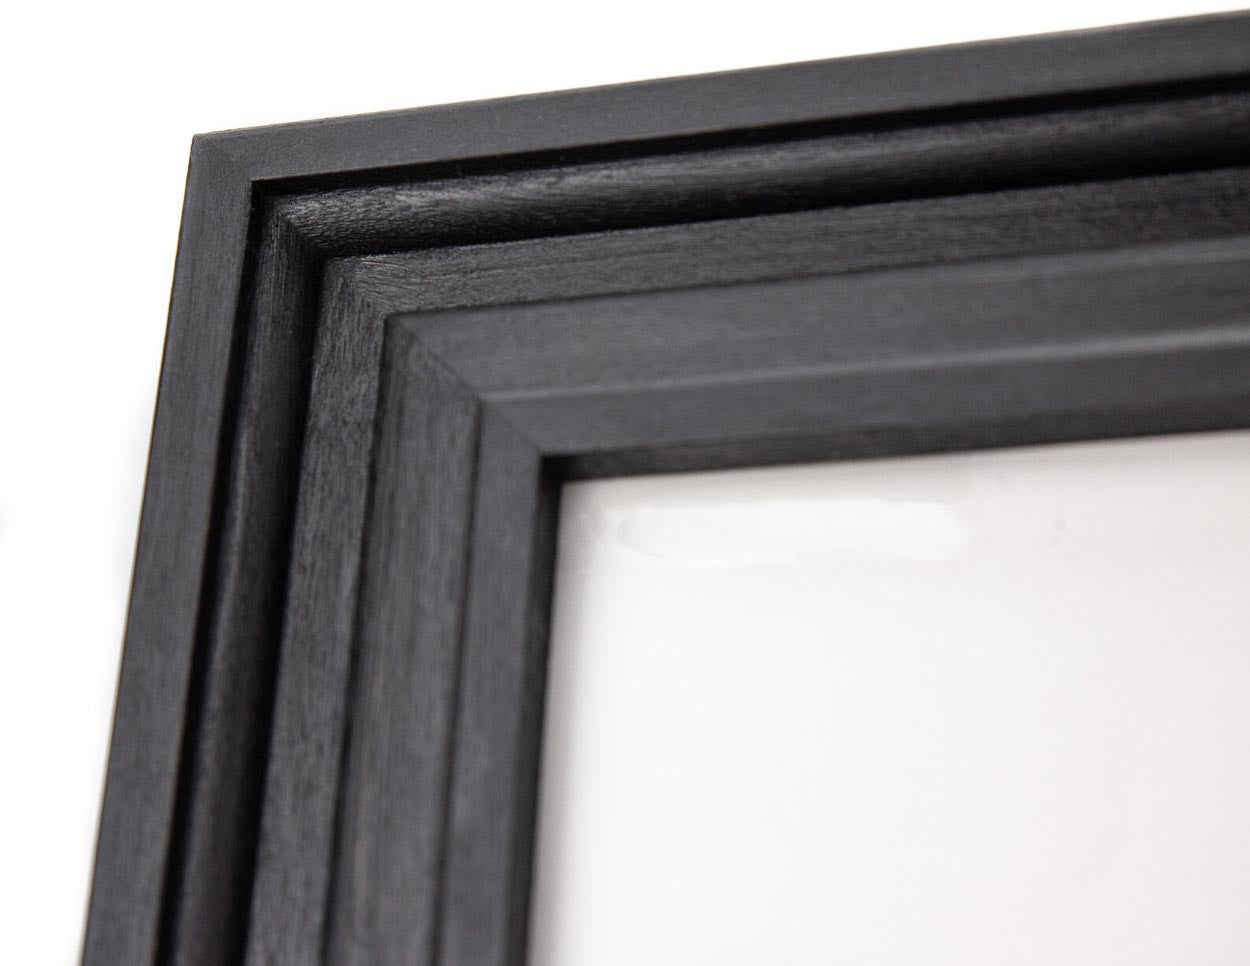 Black Vintage Design Photo Frame from Solid Birch Hardwood 3 inch wide